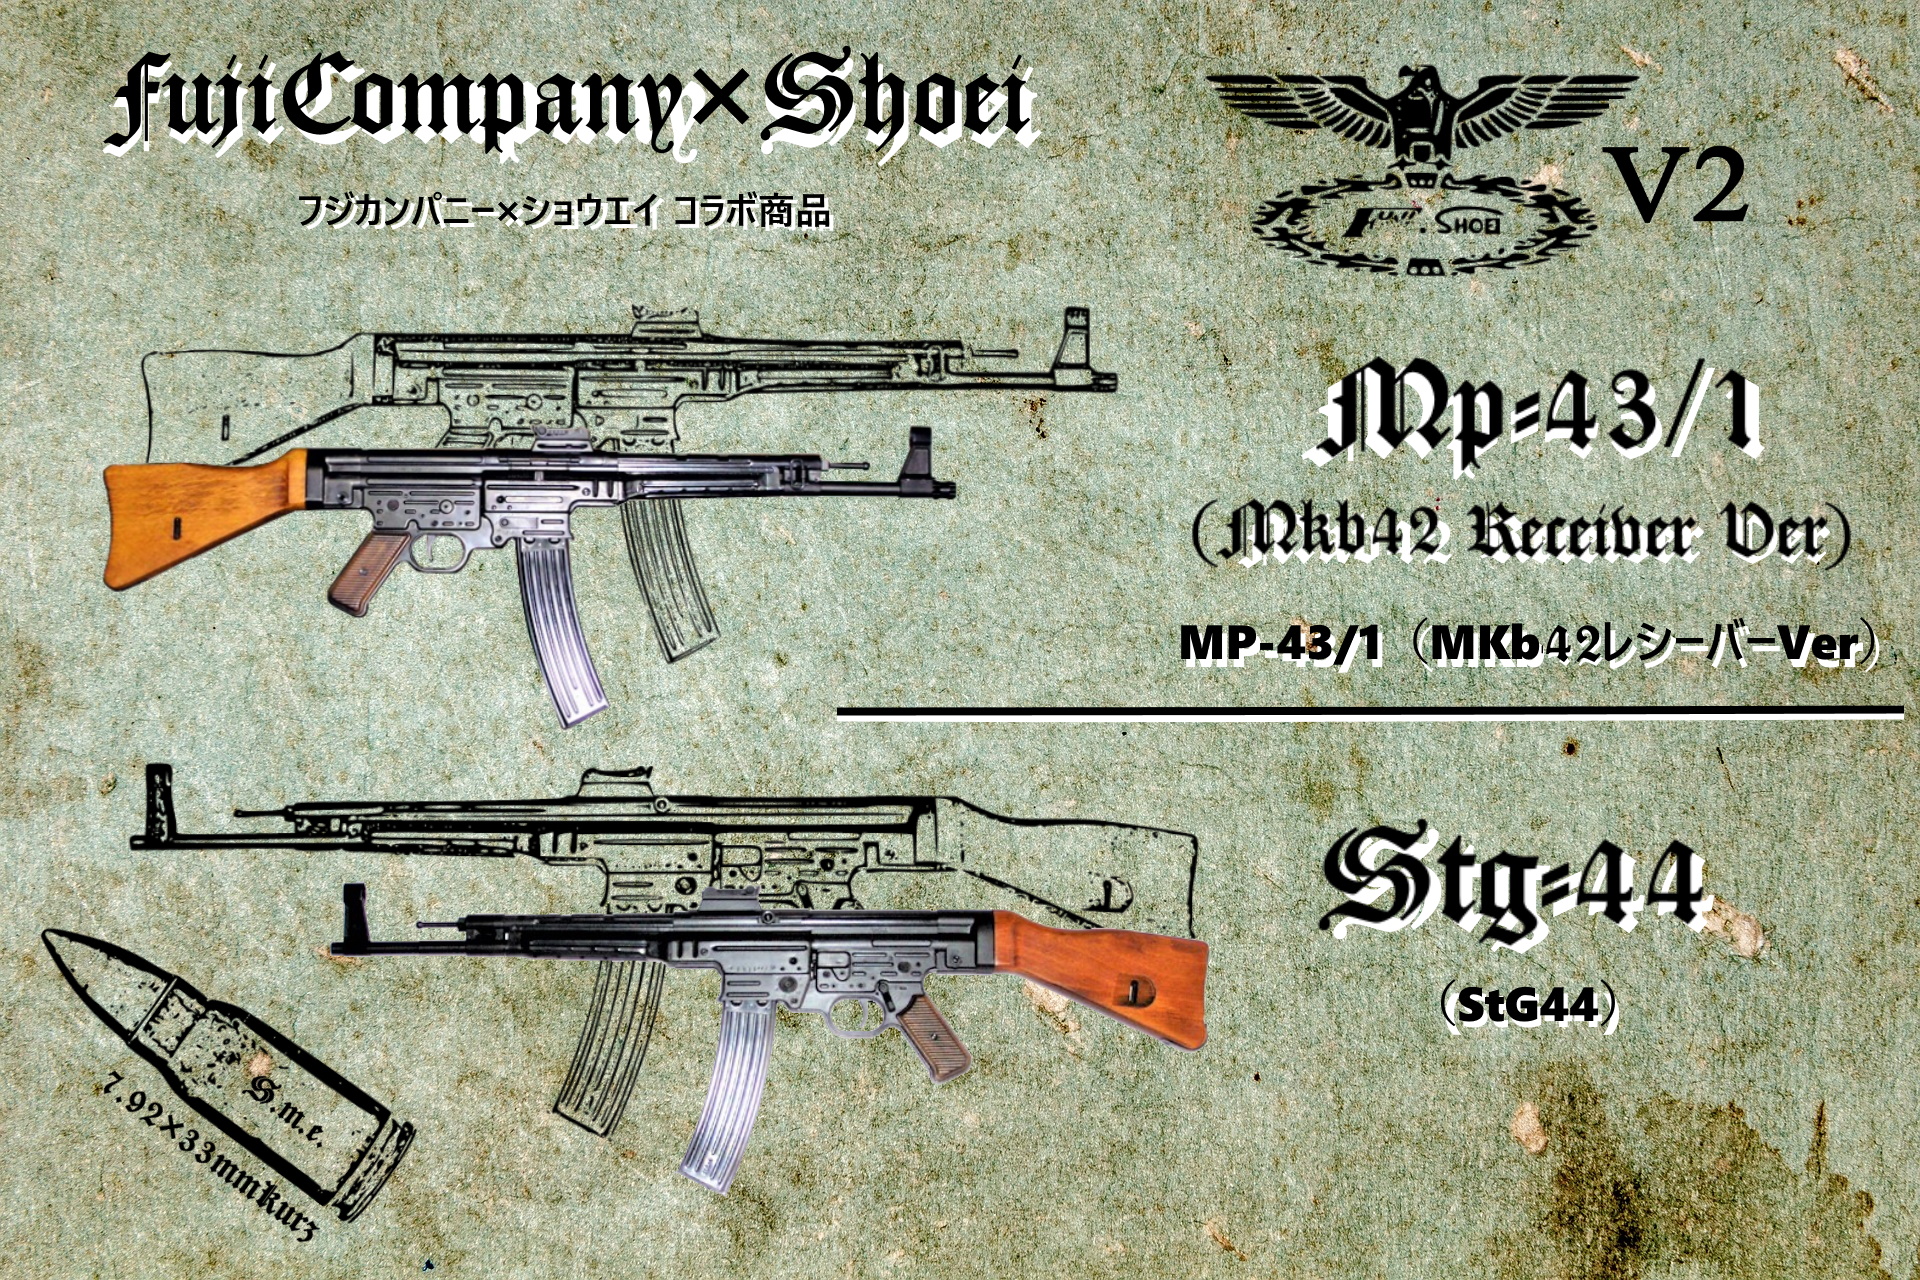 ショウエイ製MP44シリーズの詳細 - フジカンパニー